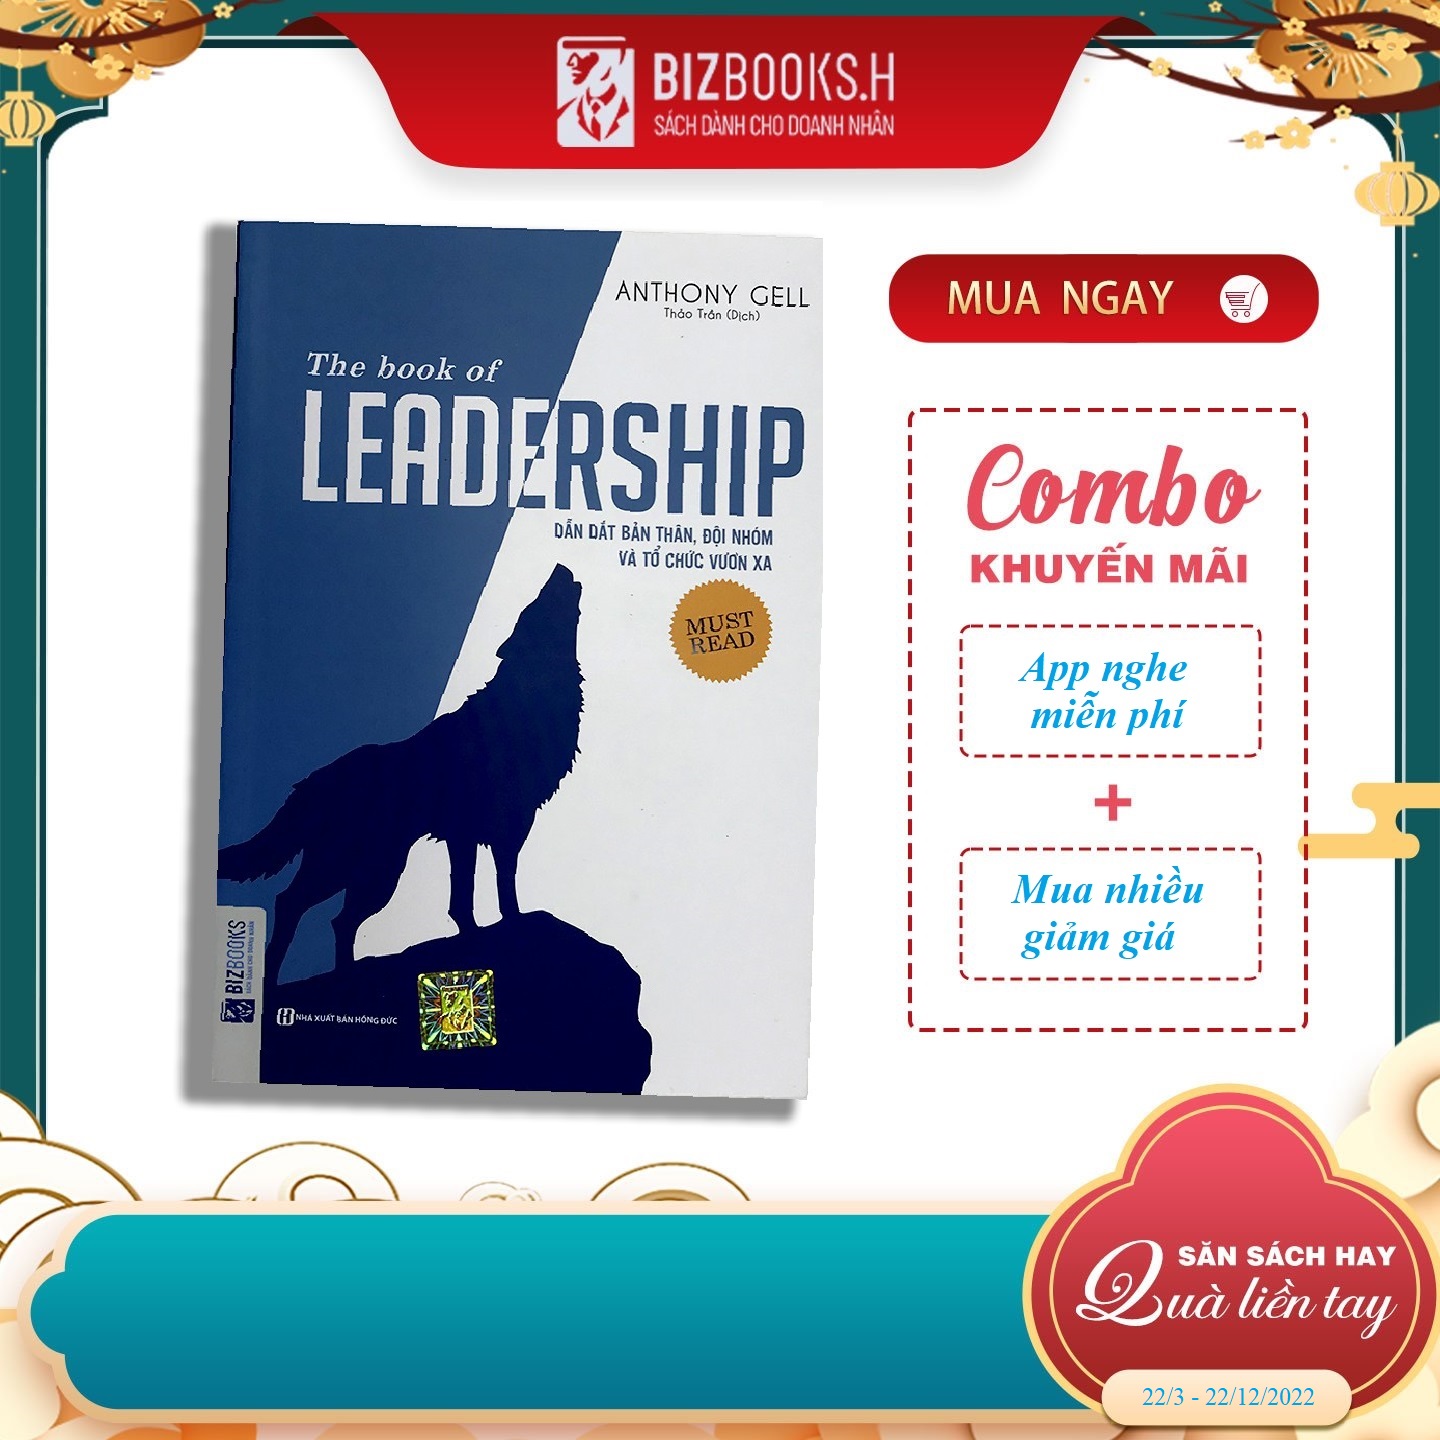 The book of leadership - Dẫn dắt bản thân, đội nhóm và tổ chức vươn xa